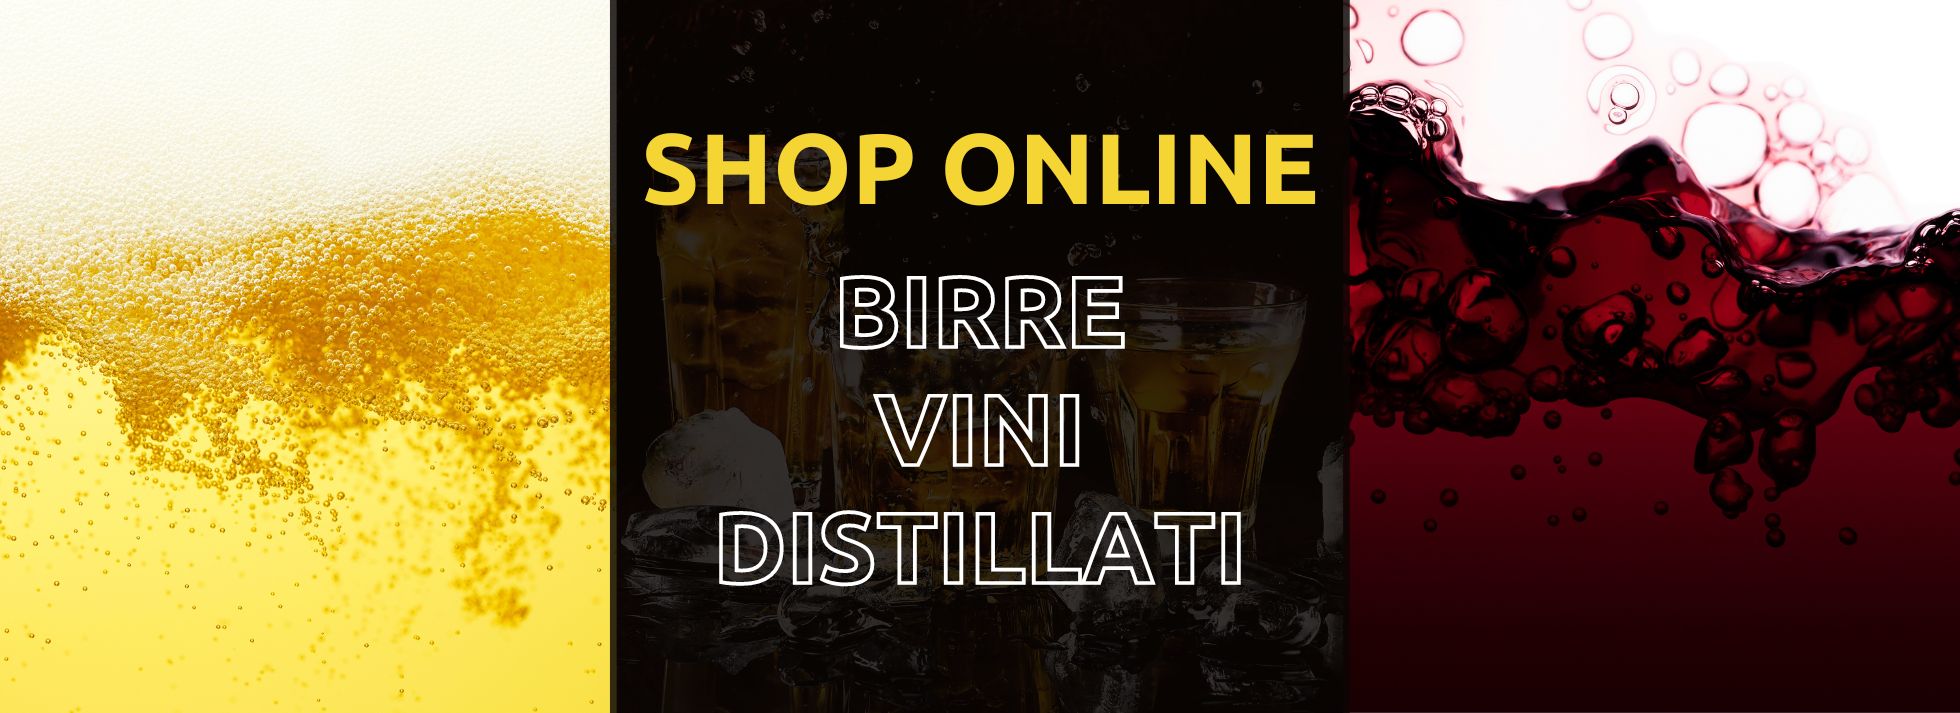 shop online birre vini